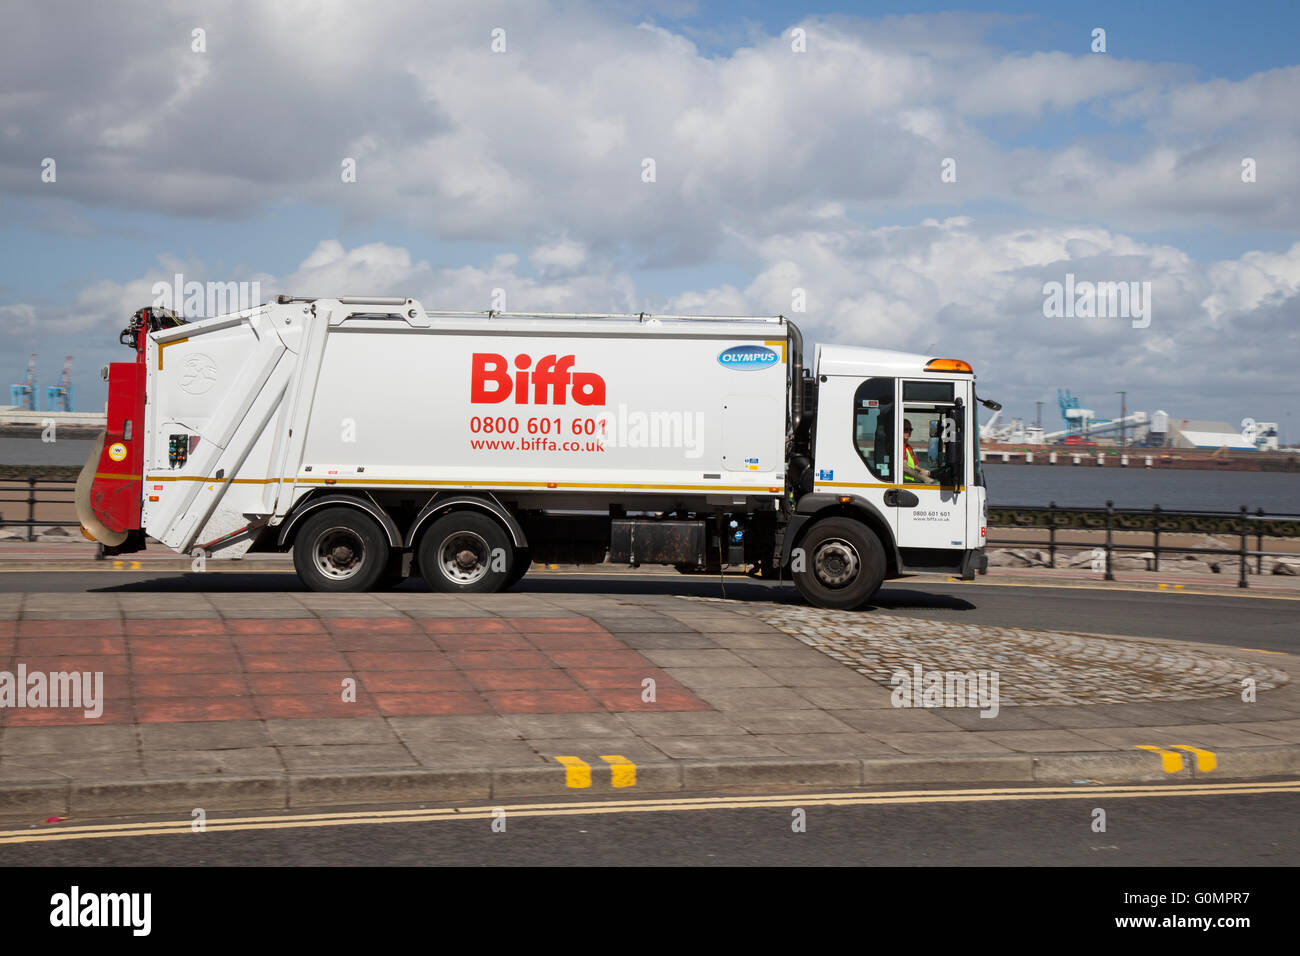 Biffa Camion Poubelle, camion, refuser le panier, déchets, déchets, ordures, camion, véhicule, ville, dump, environnement, recyclage, l'environnement, nettoyage à New Brighton, Wallasey, le Wirral, Merseyside, Royaume-Uni Banque D'Images